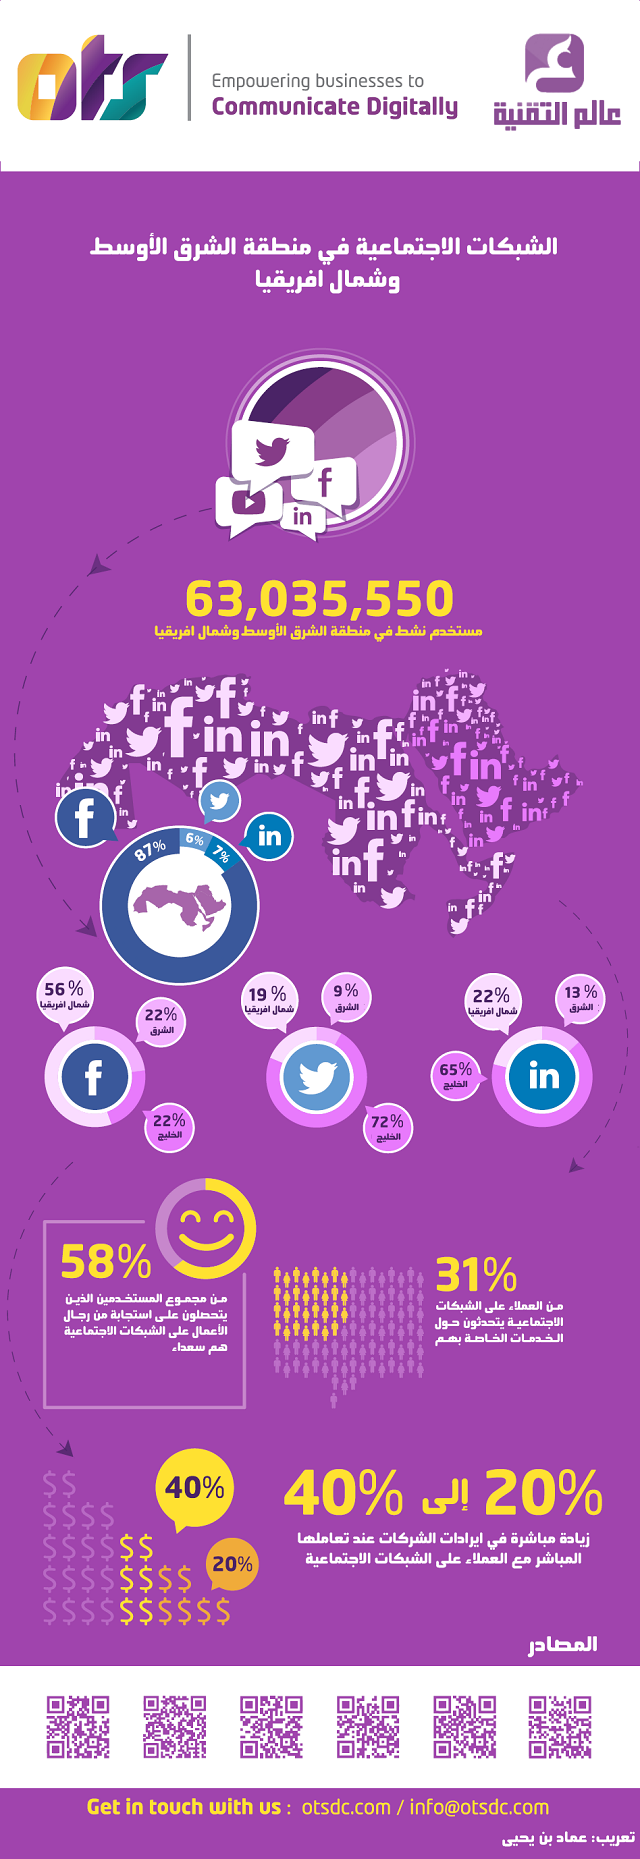 الشبكات-الإجتماعية-في-منطقة-الشرق-الاوسط-وشمال-افريقيا-